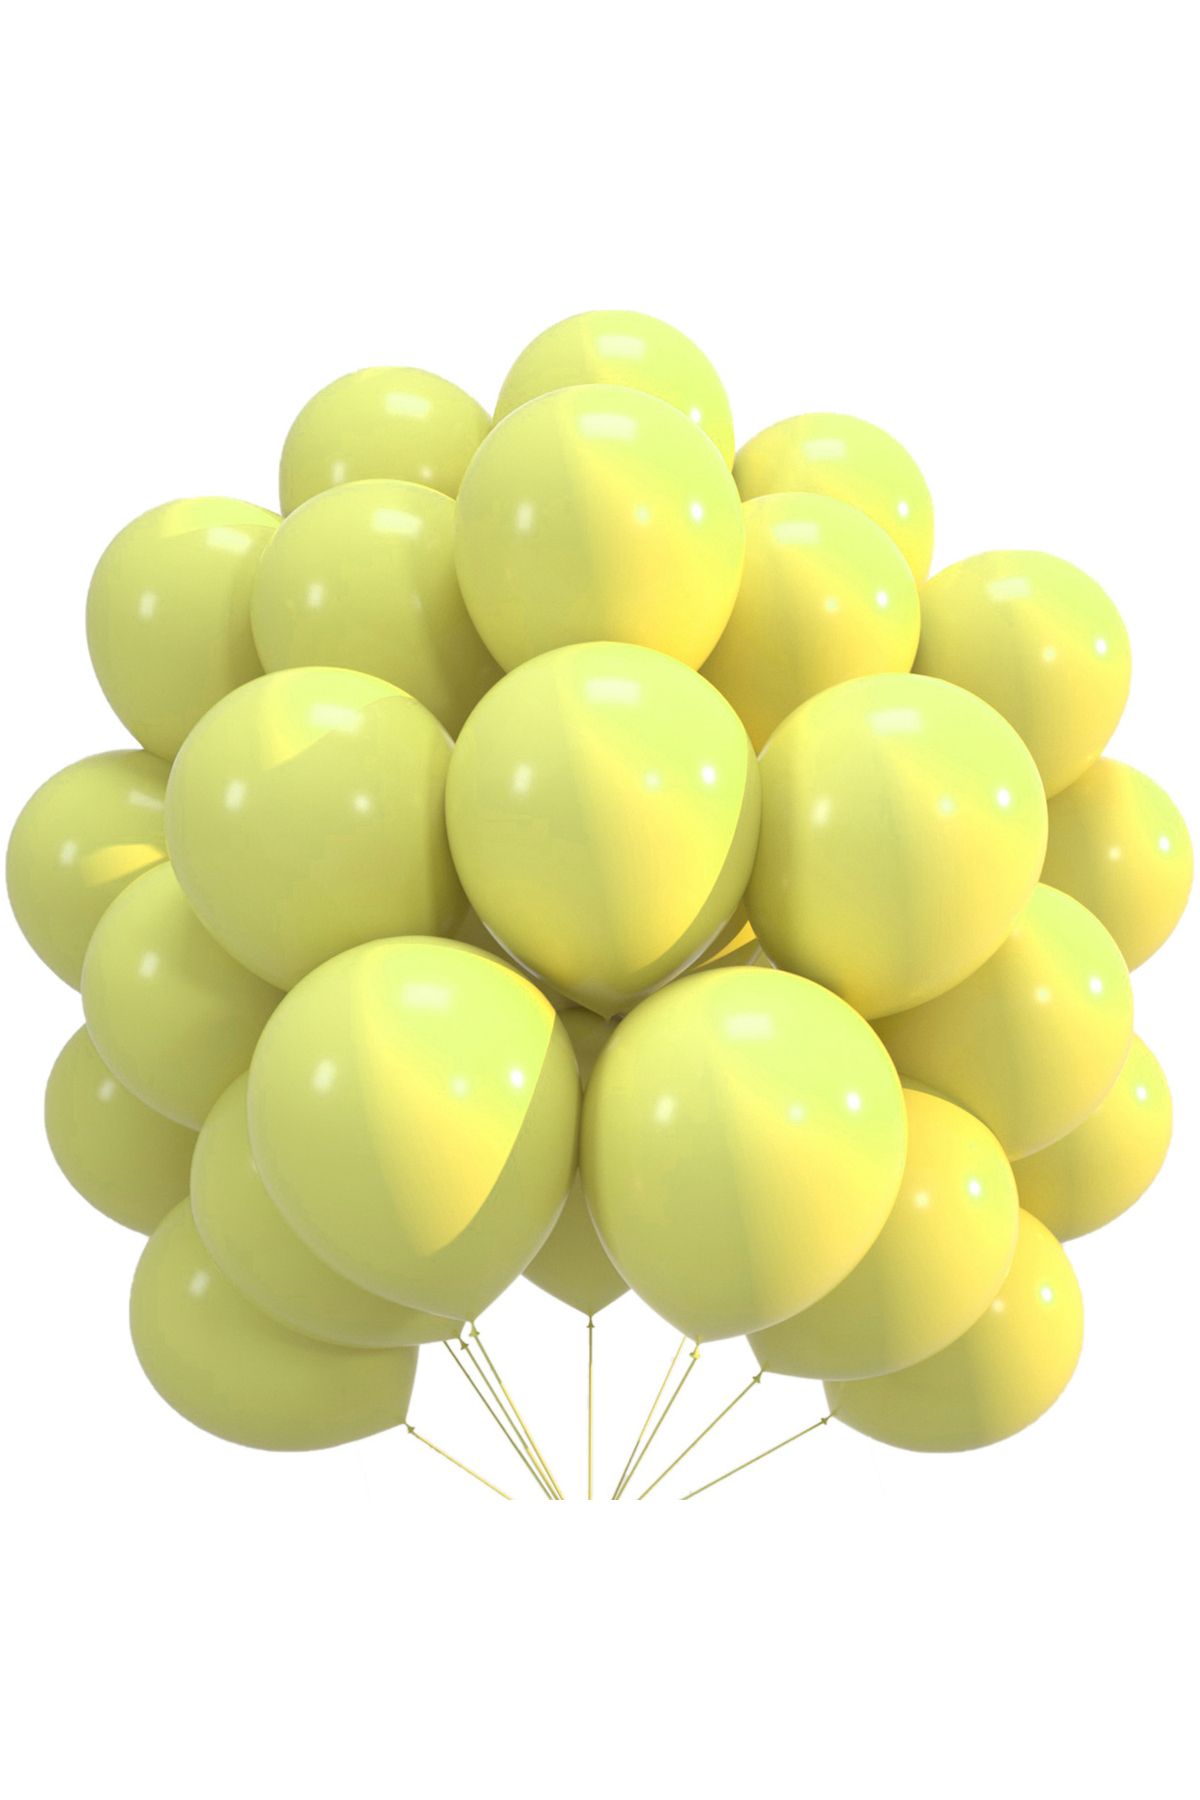 pazariz Lateks Balon Parti Organizasyon Balonu 14/A düğün doğum günü dekorasyon 100 Adet